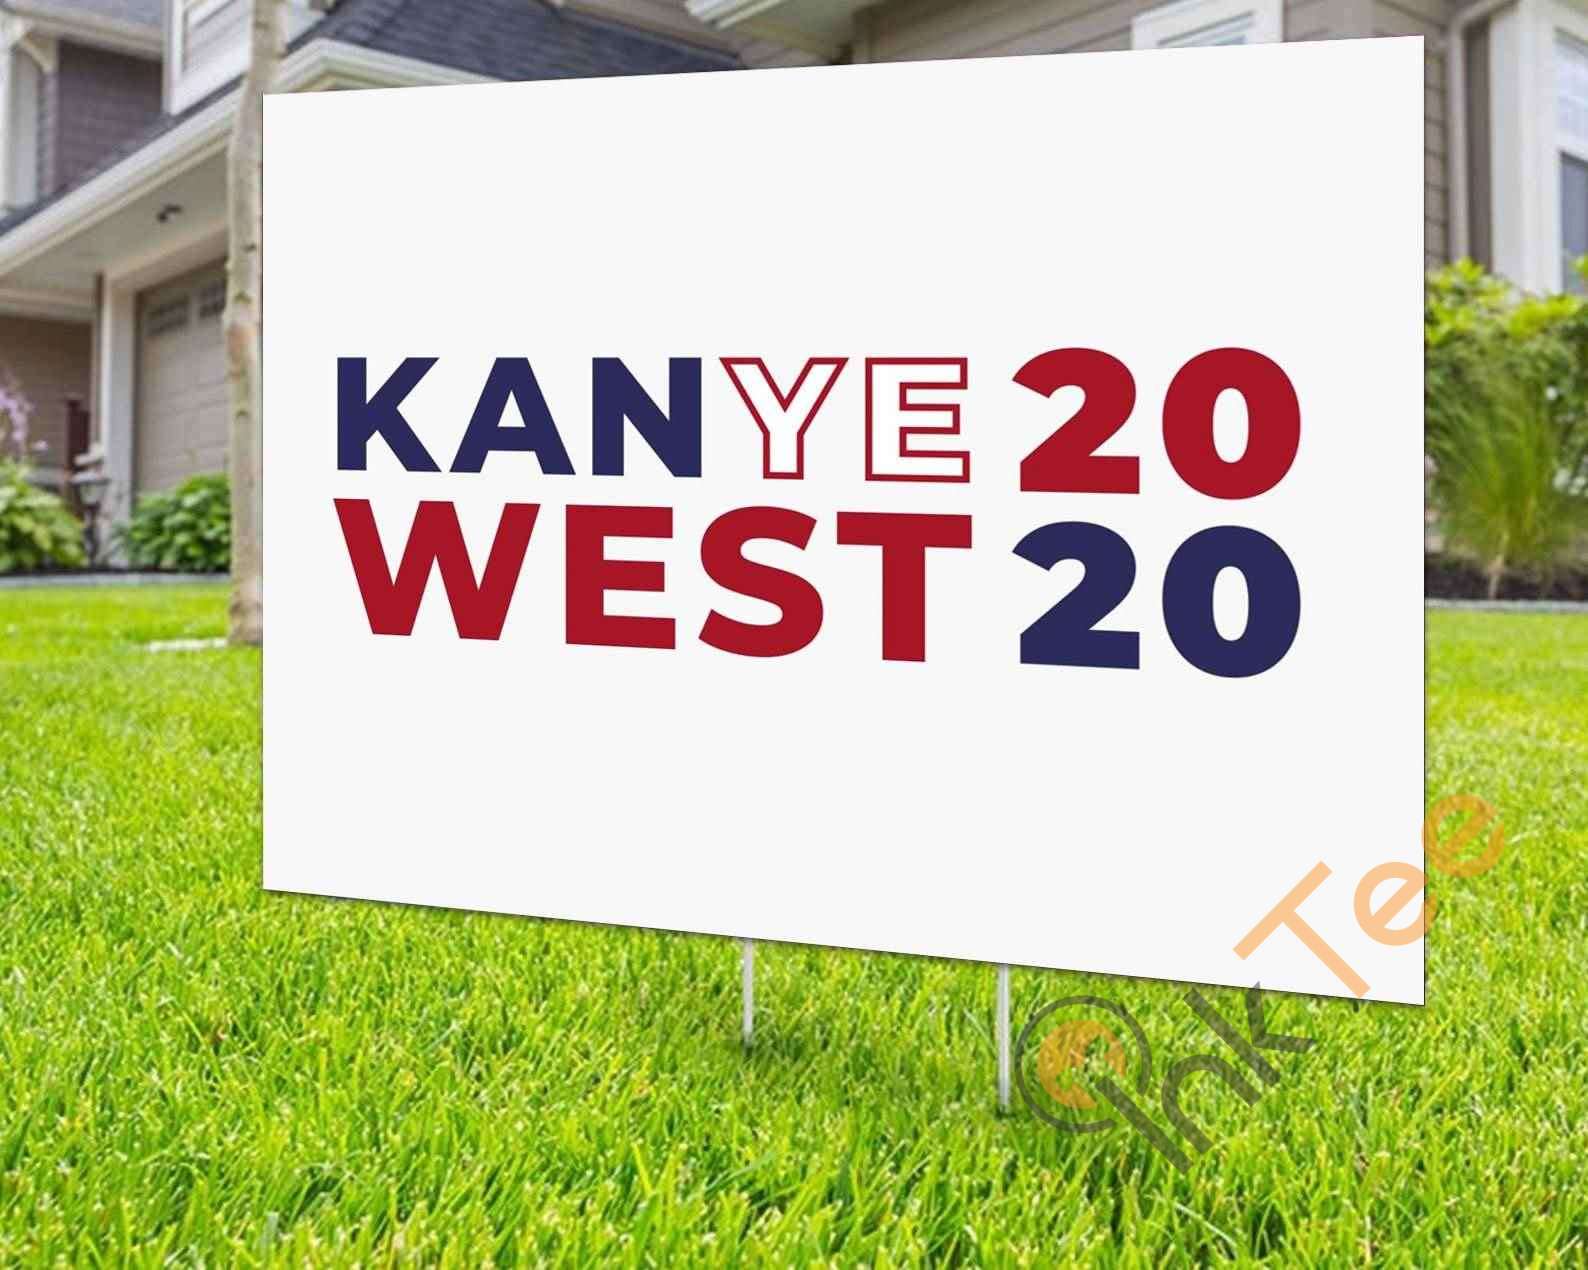 yeezy 2020 sign